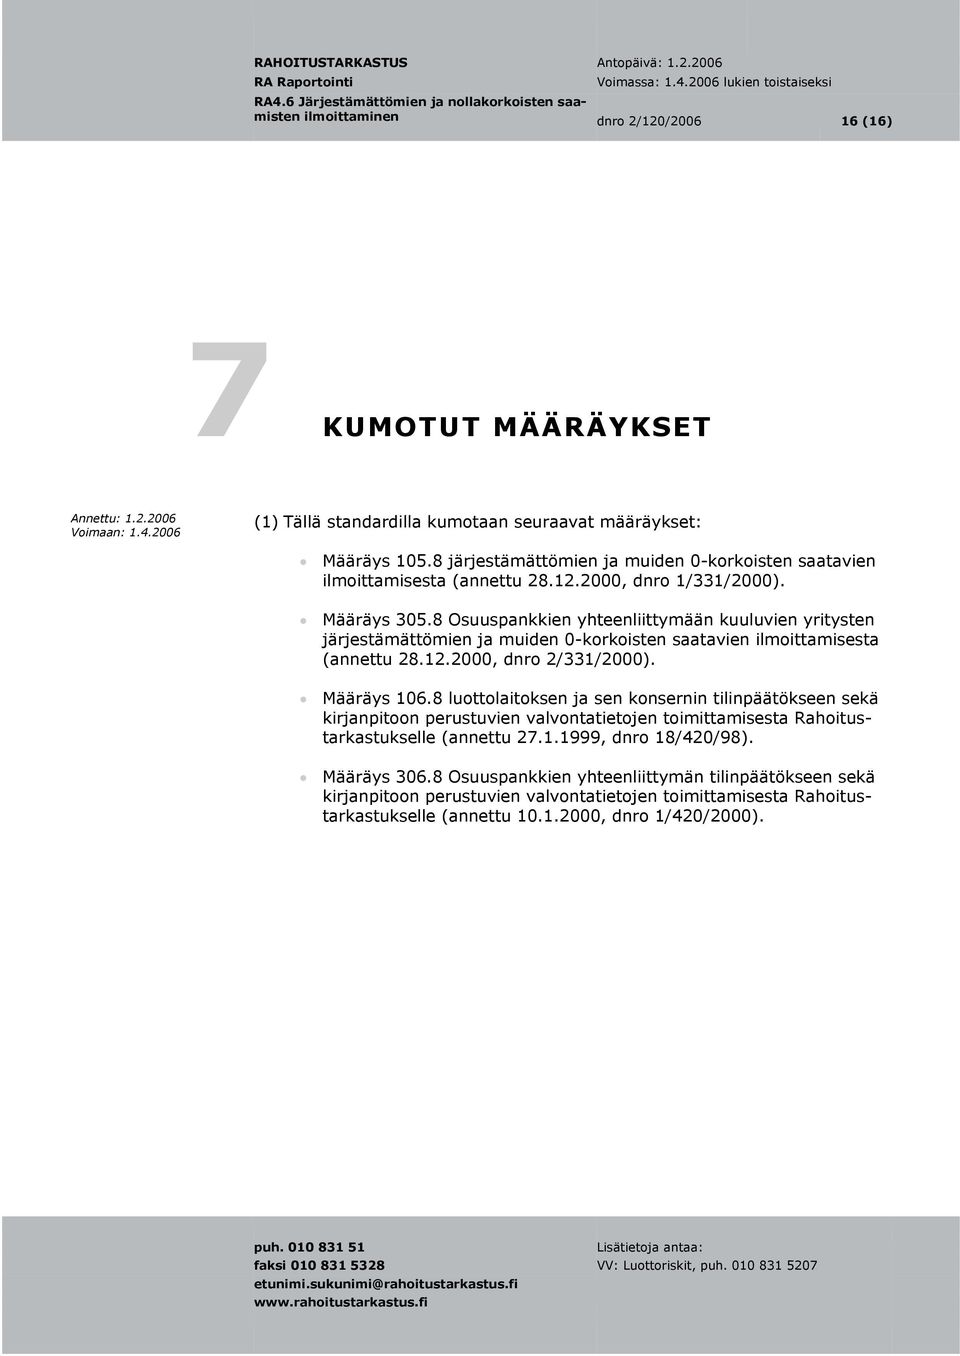 8 Osuuspankkien yhteenliittymään kuuluvien yritysten järjestämättömien ja muiden 0-korkoisten saatavien ilmoittamisesta (annettu 28.12.2000, dnro 2/331/2000). Määräys 106.